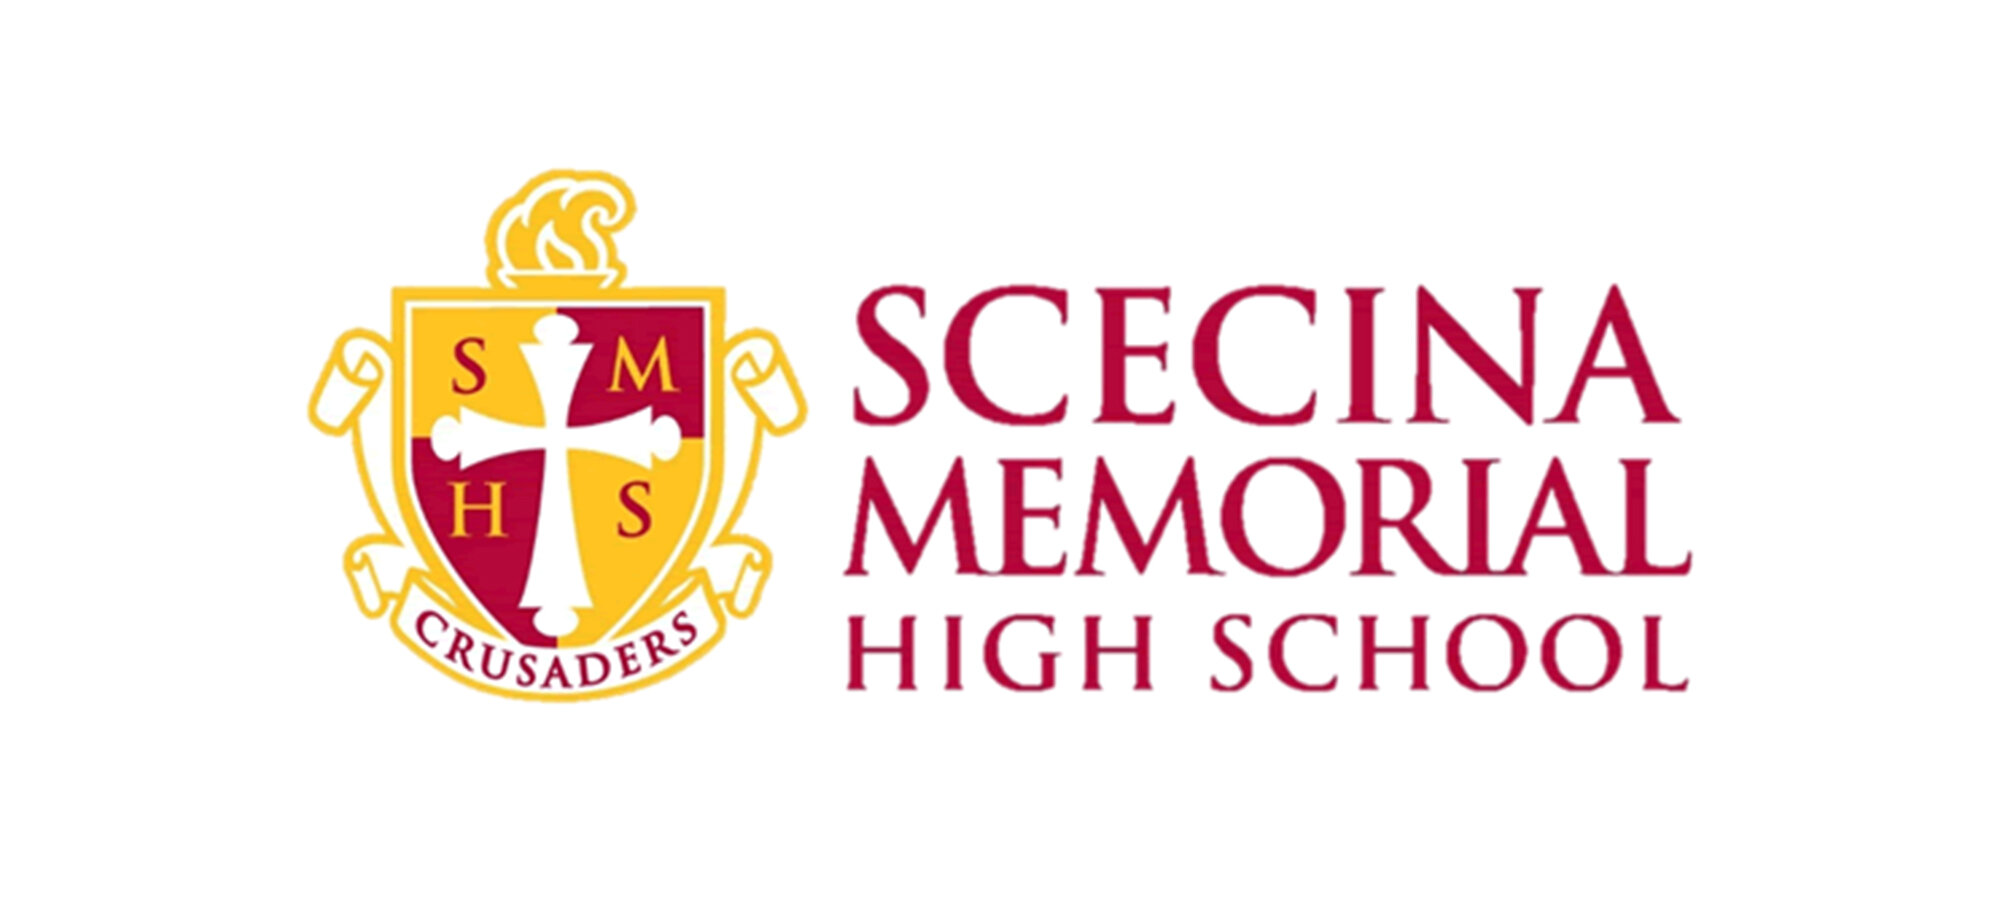 Scecina Memorial High School.jpg